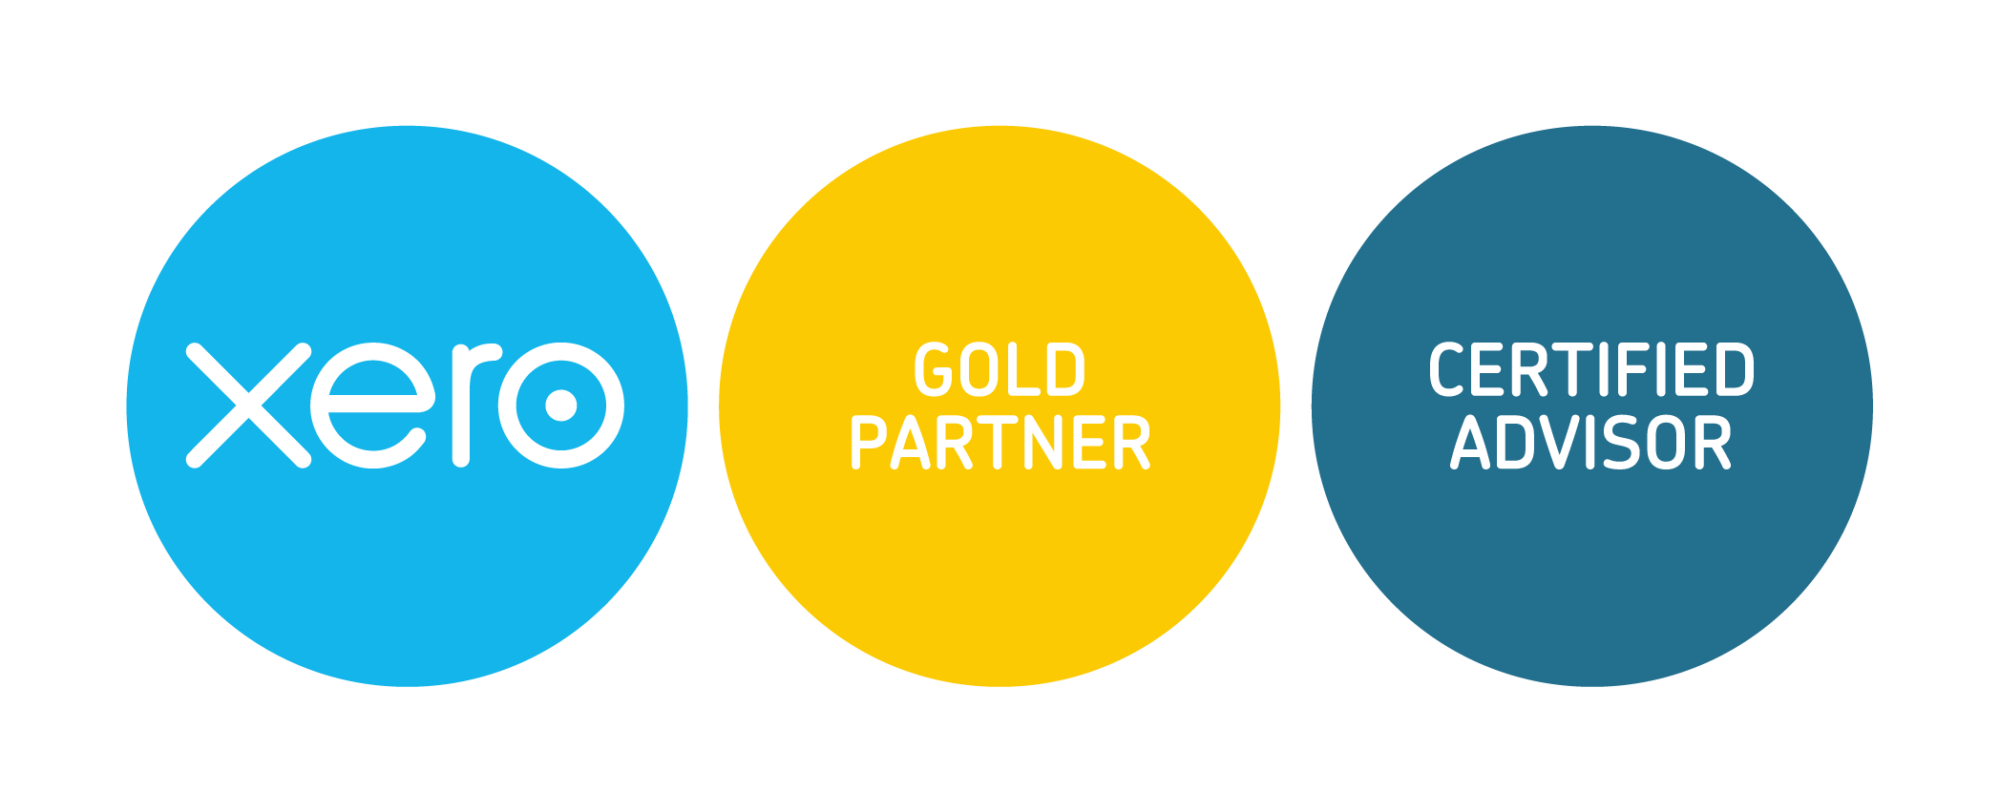 xero-gold-partner + cert-advisor-badges-RGB